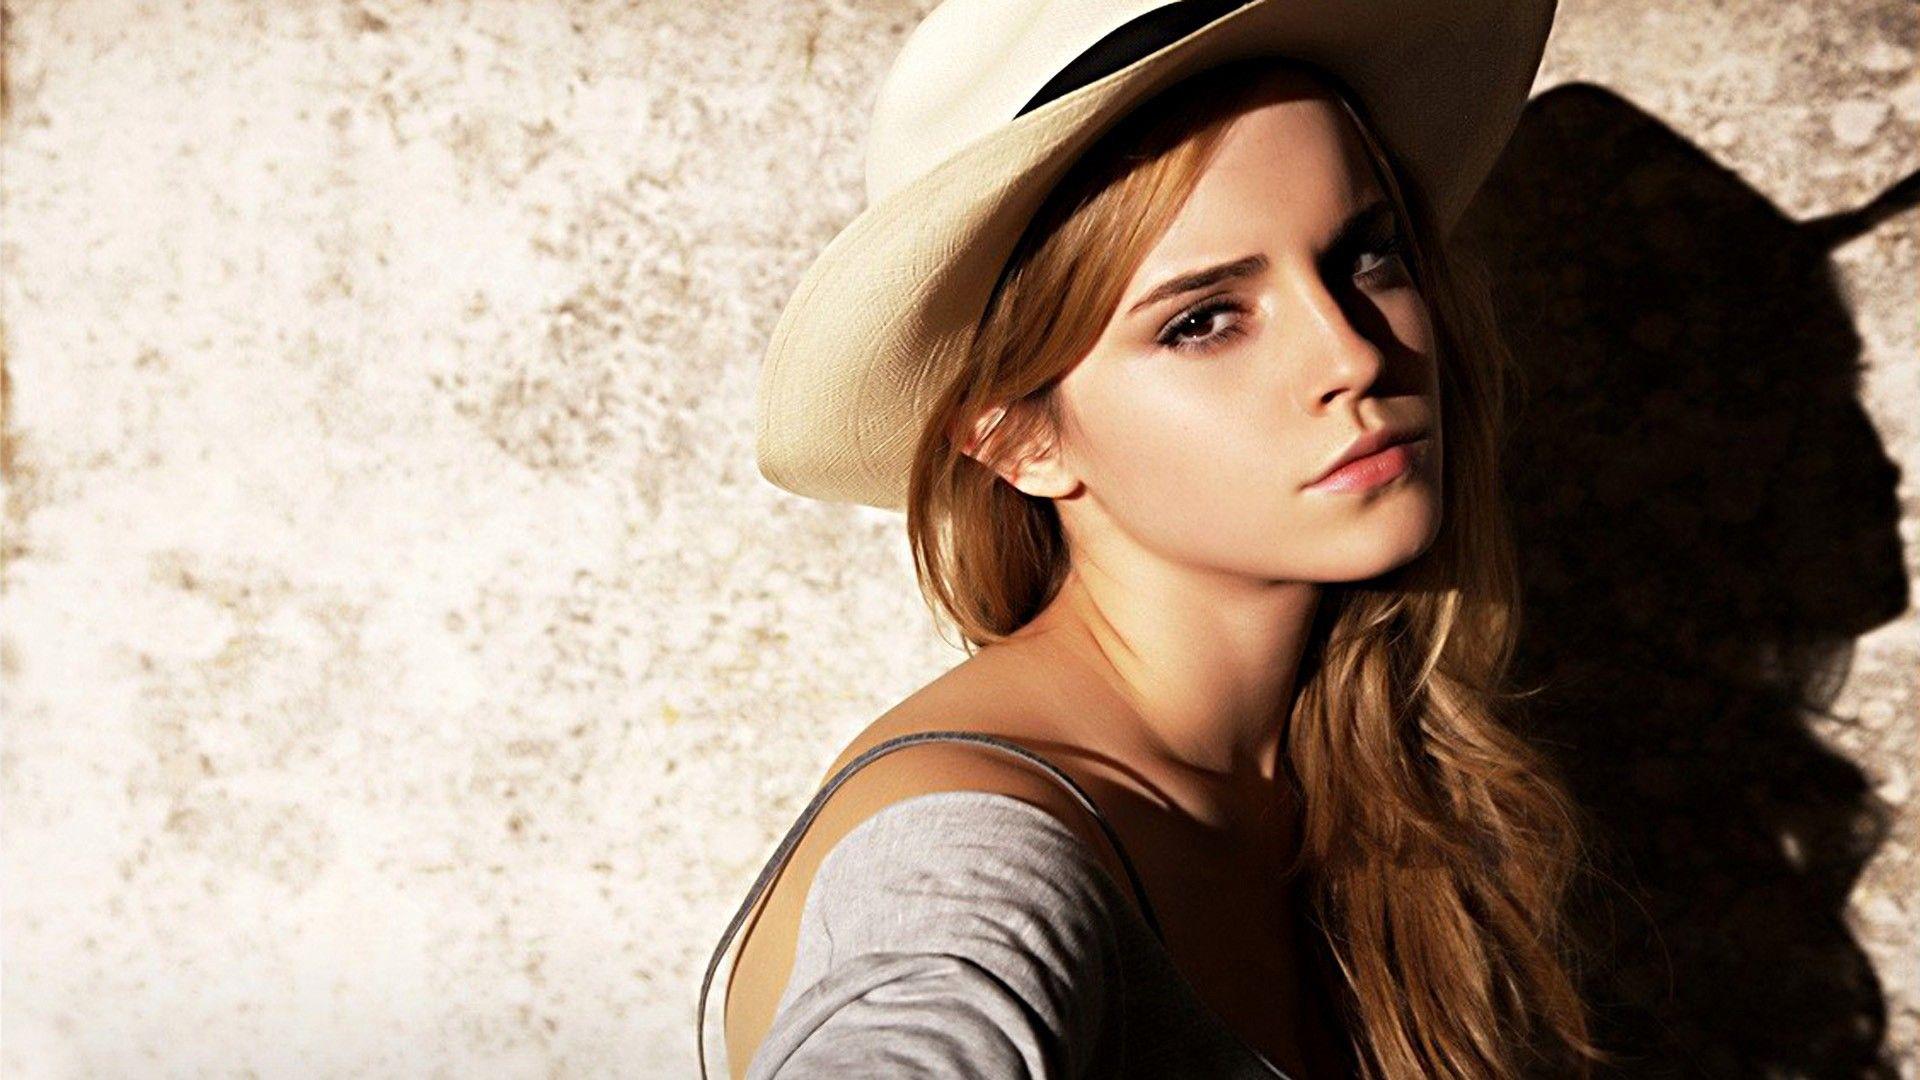 Emma Watson Full HD, High Definition, High Quality